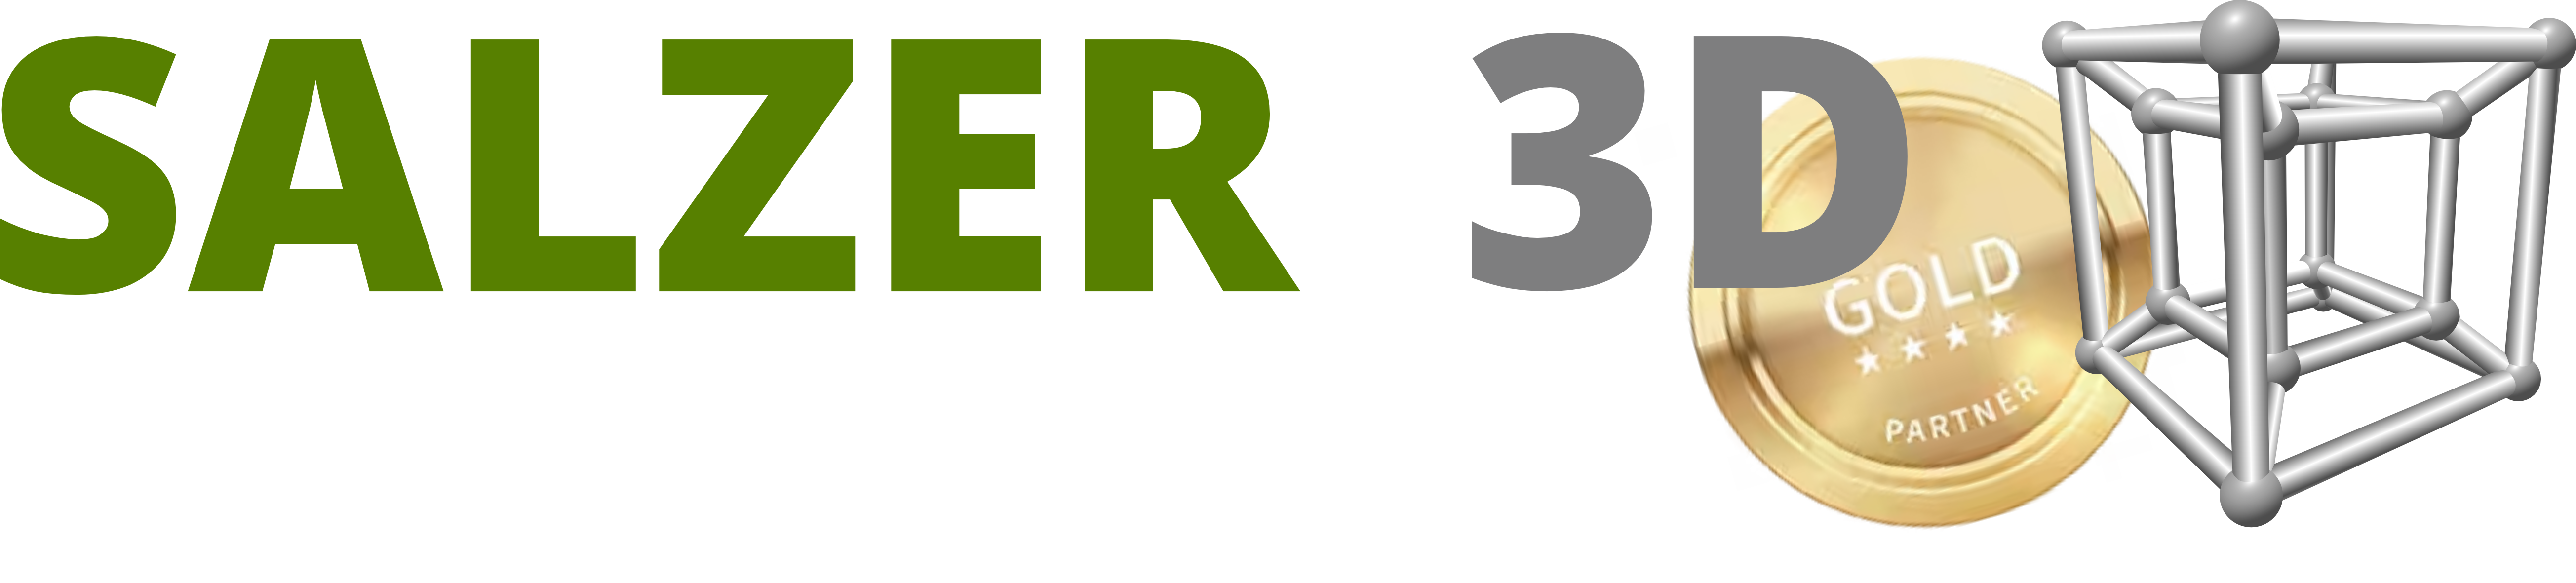 Logo Salzer 3D Corel Gold Partner